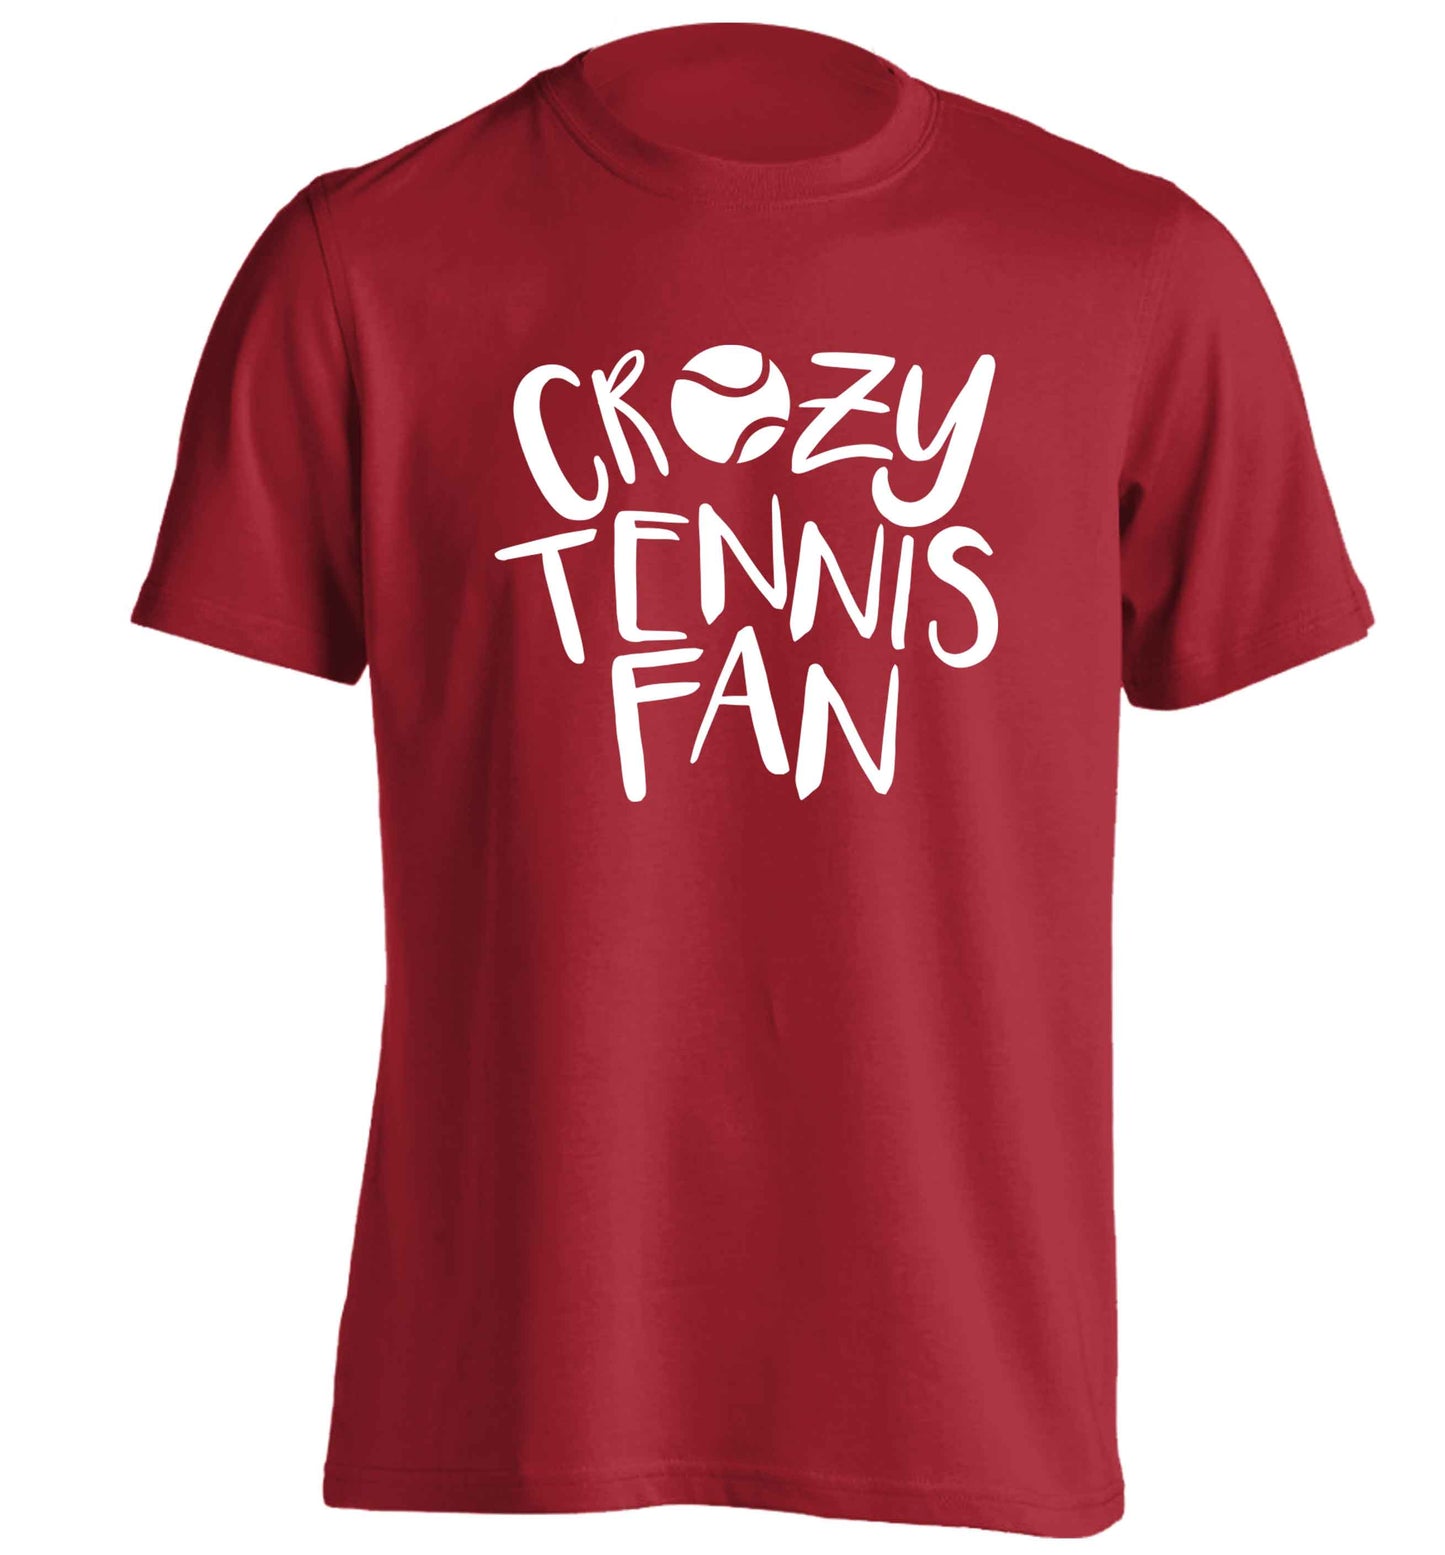 Crazy tennis fan adults unisex red Tshirt 2XL